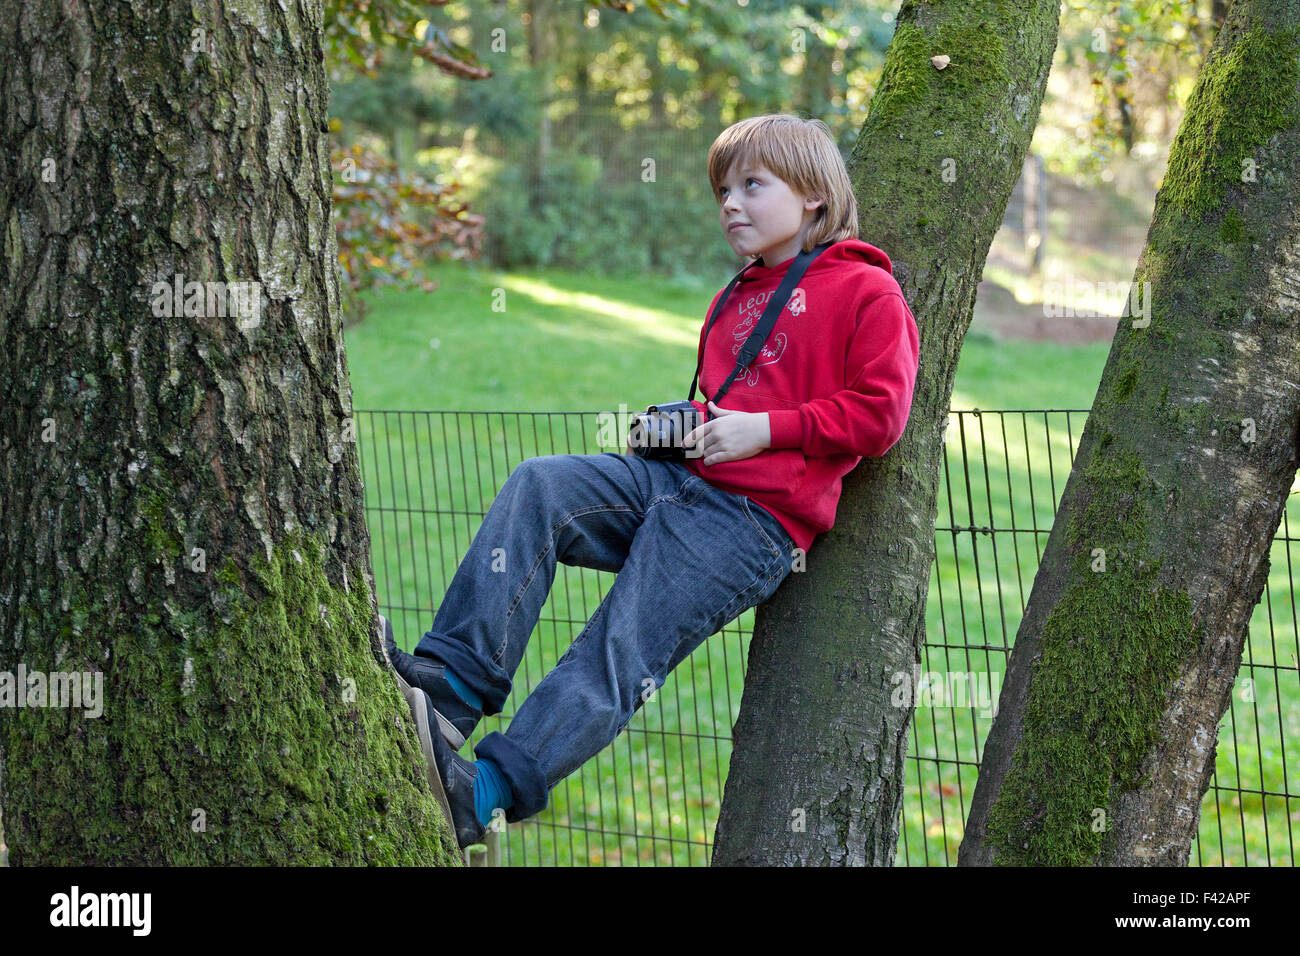 Ritratto di un giovane ragazzo con una telecamera squatting in una struttura ad albero Foto Stock